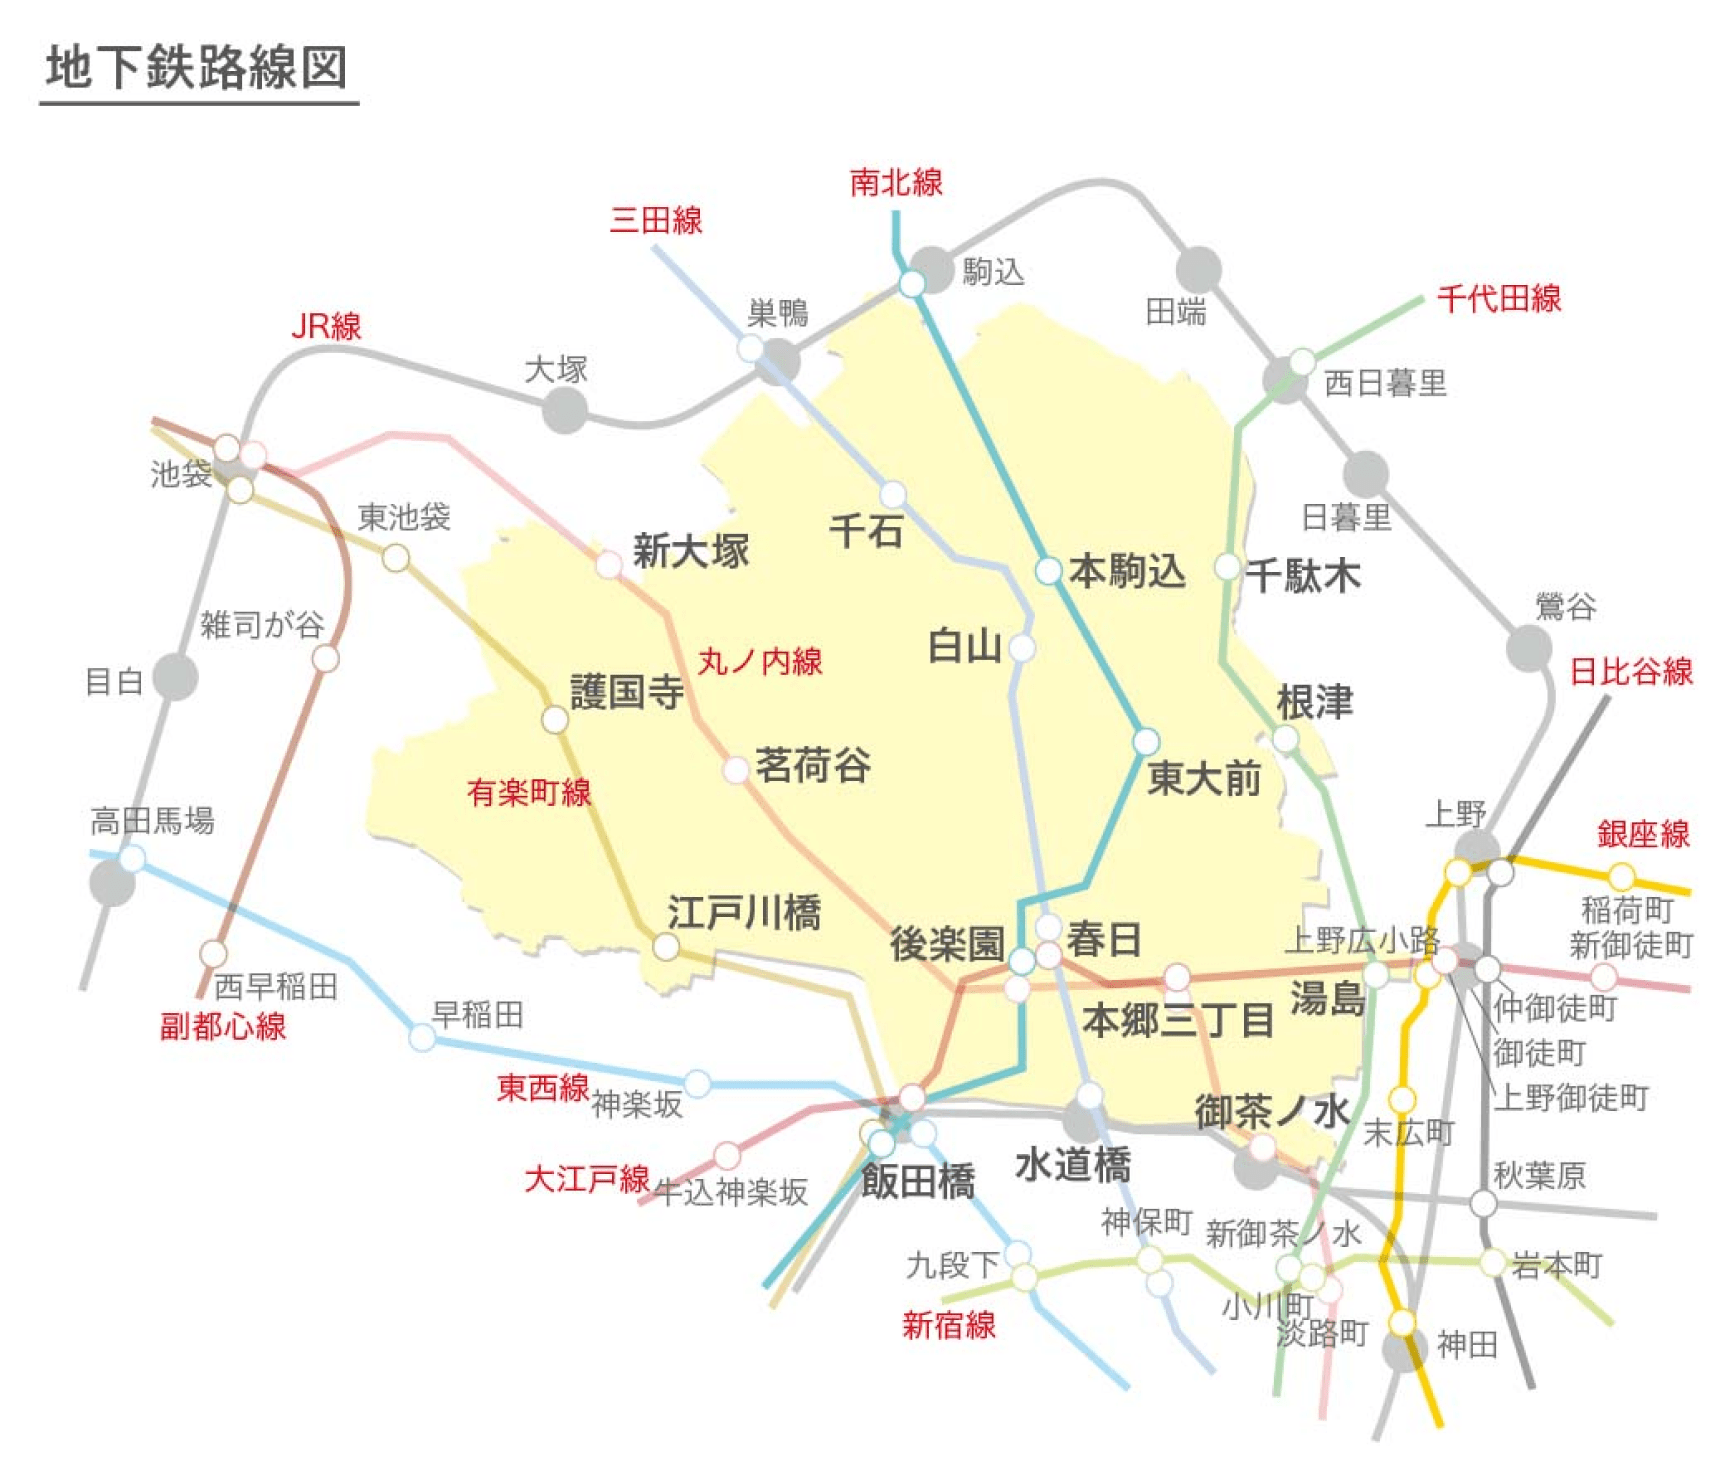 地下鉄路線図：文京区を中心に、地下鉄の路線や駅名が記載された図